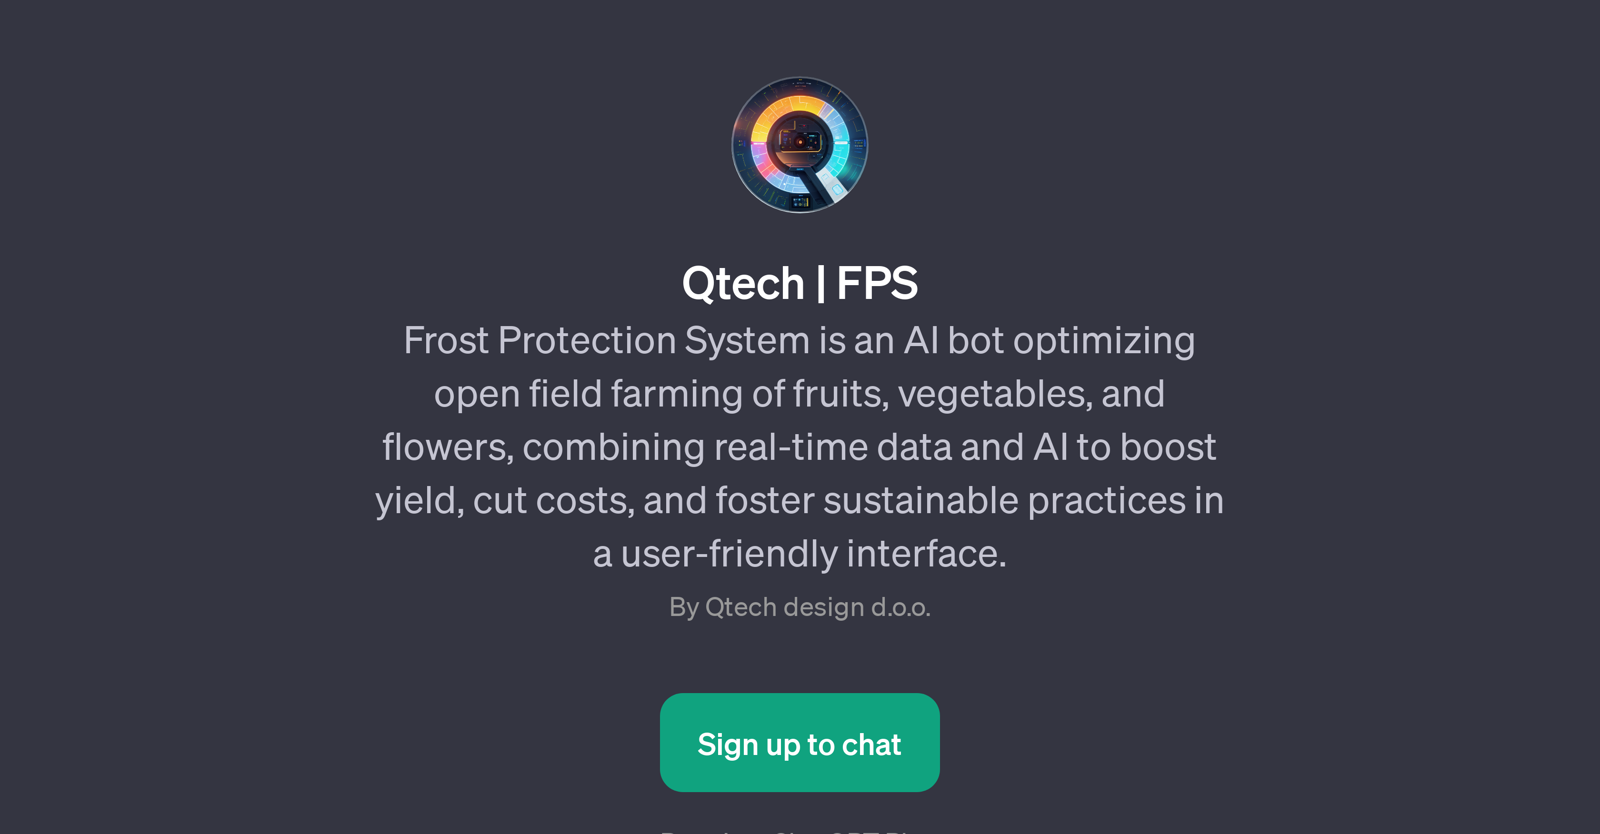 Qtech | FPS website